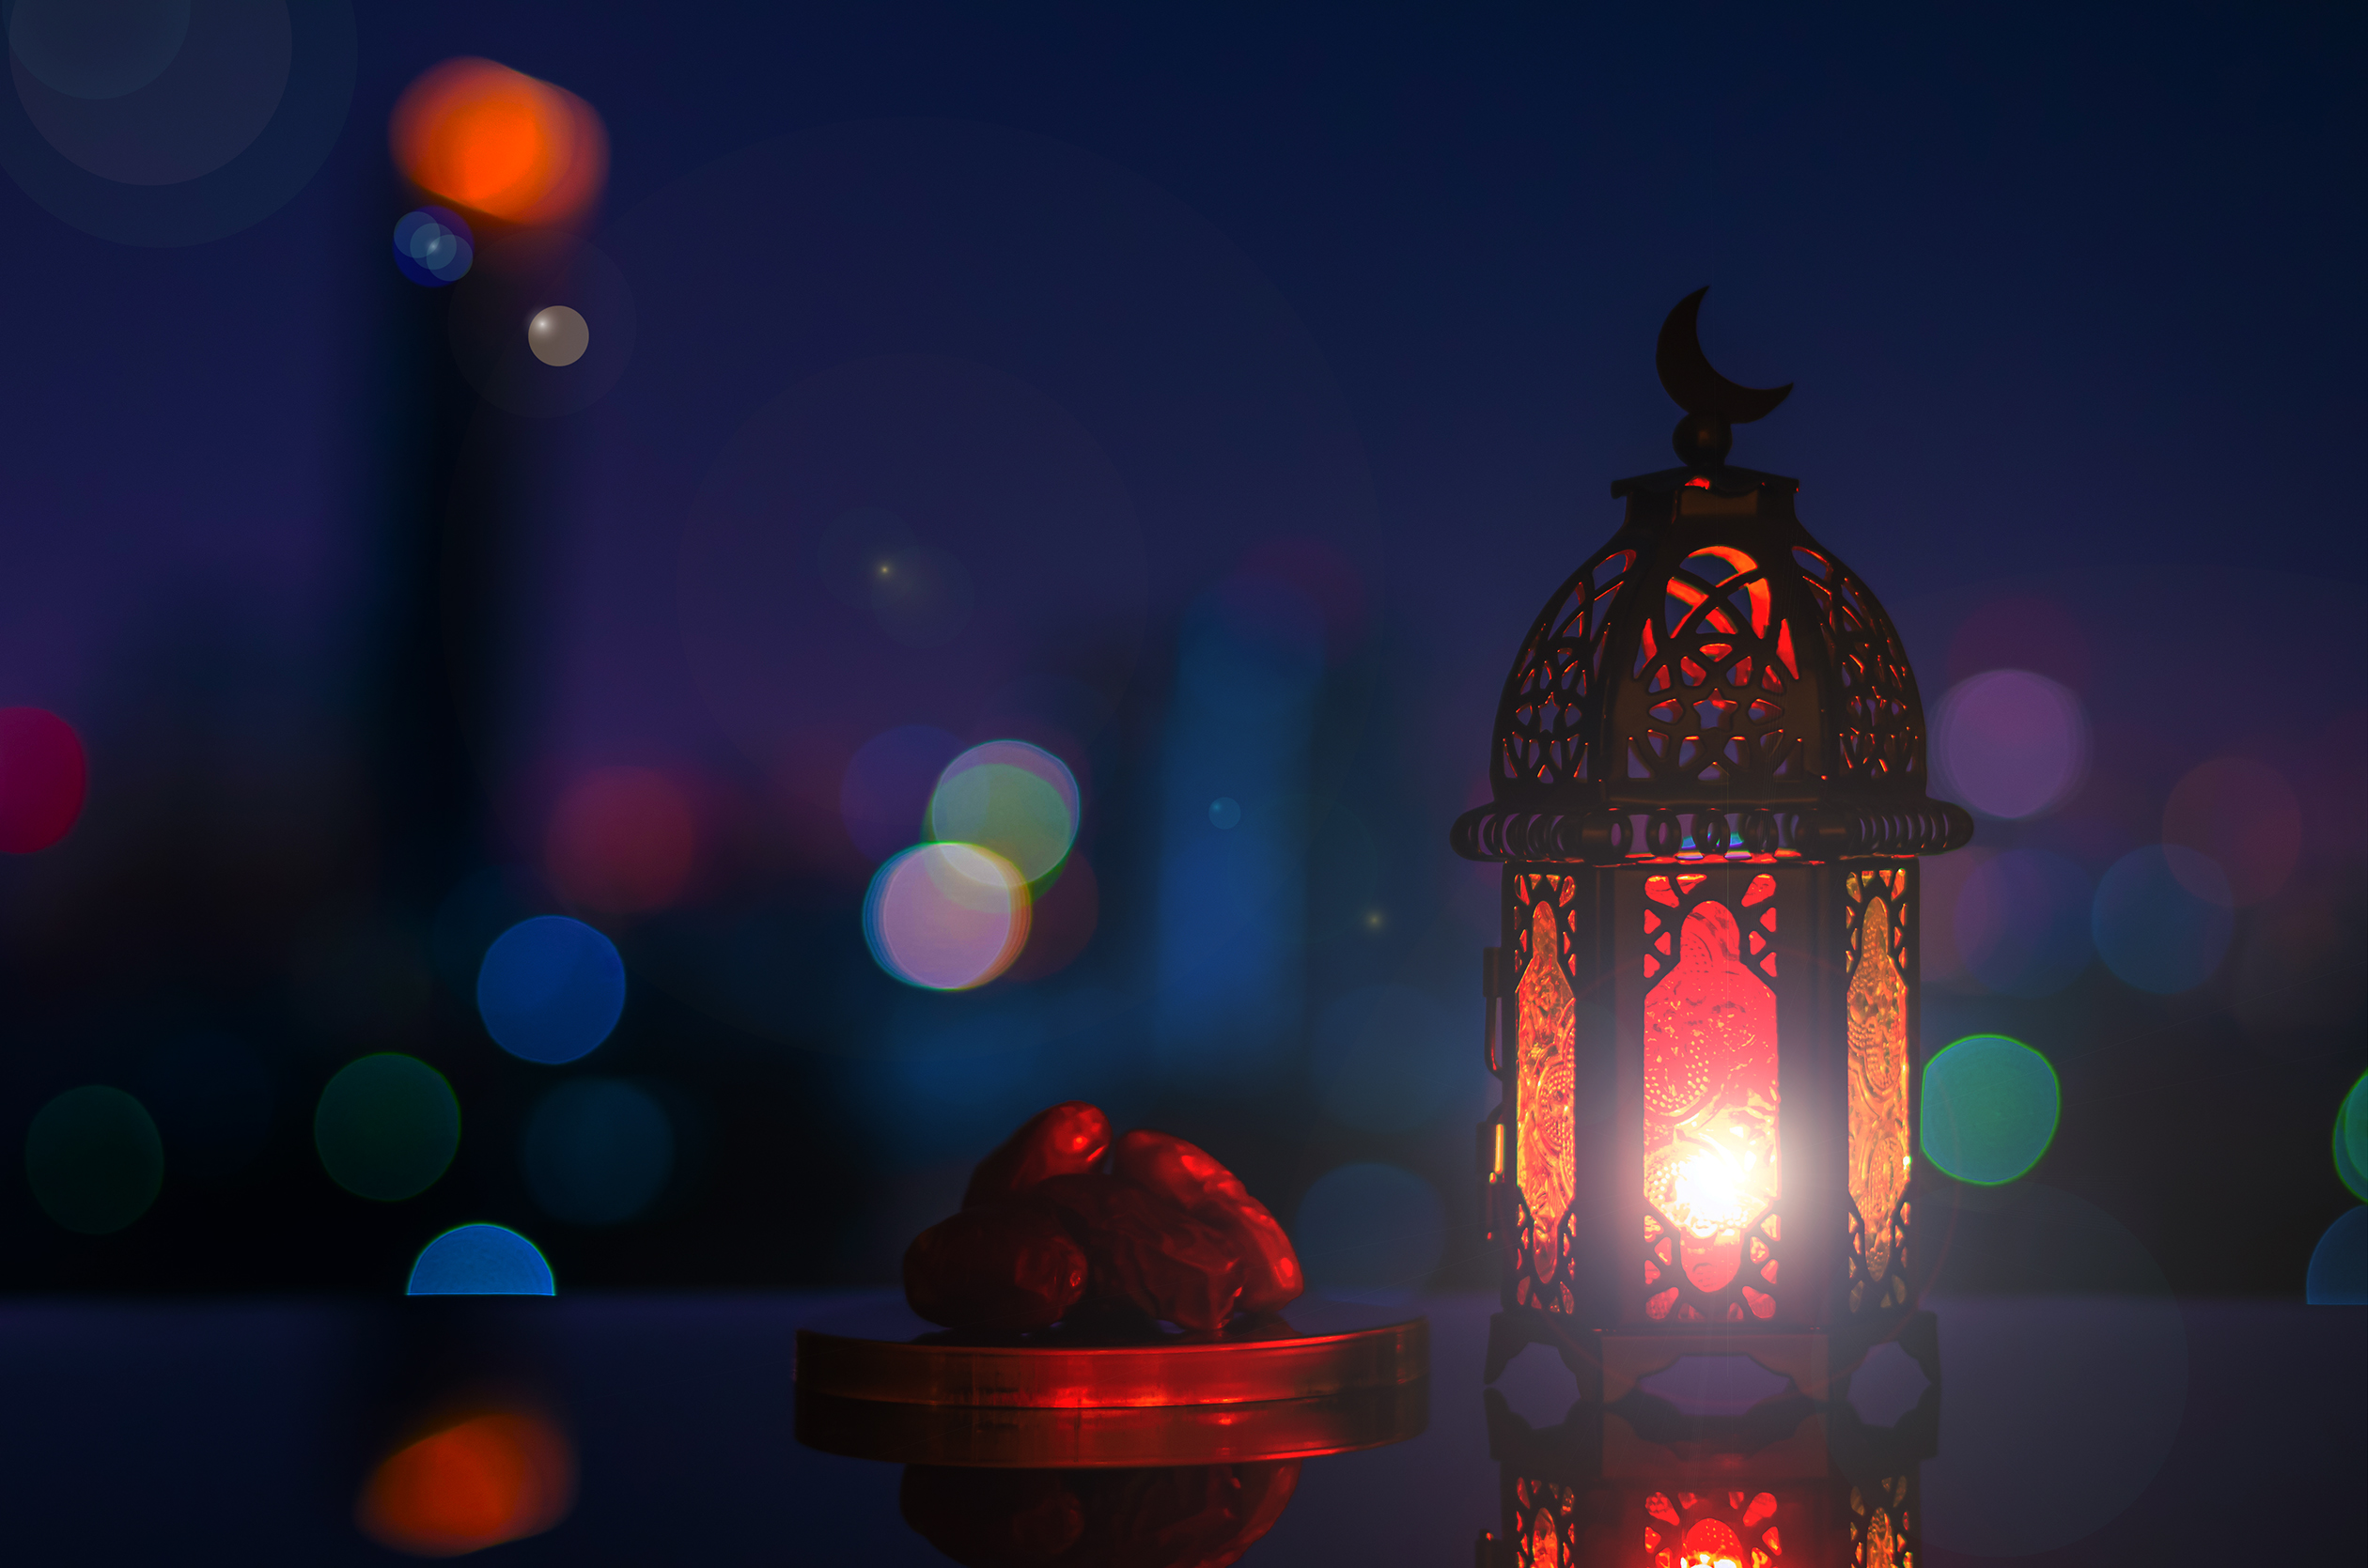 يبدأ شهر رمضان، وهو شهر التعلم والإلهام والاحتفال في جميع مدارس دولة الإمارات العربية المتحدة